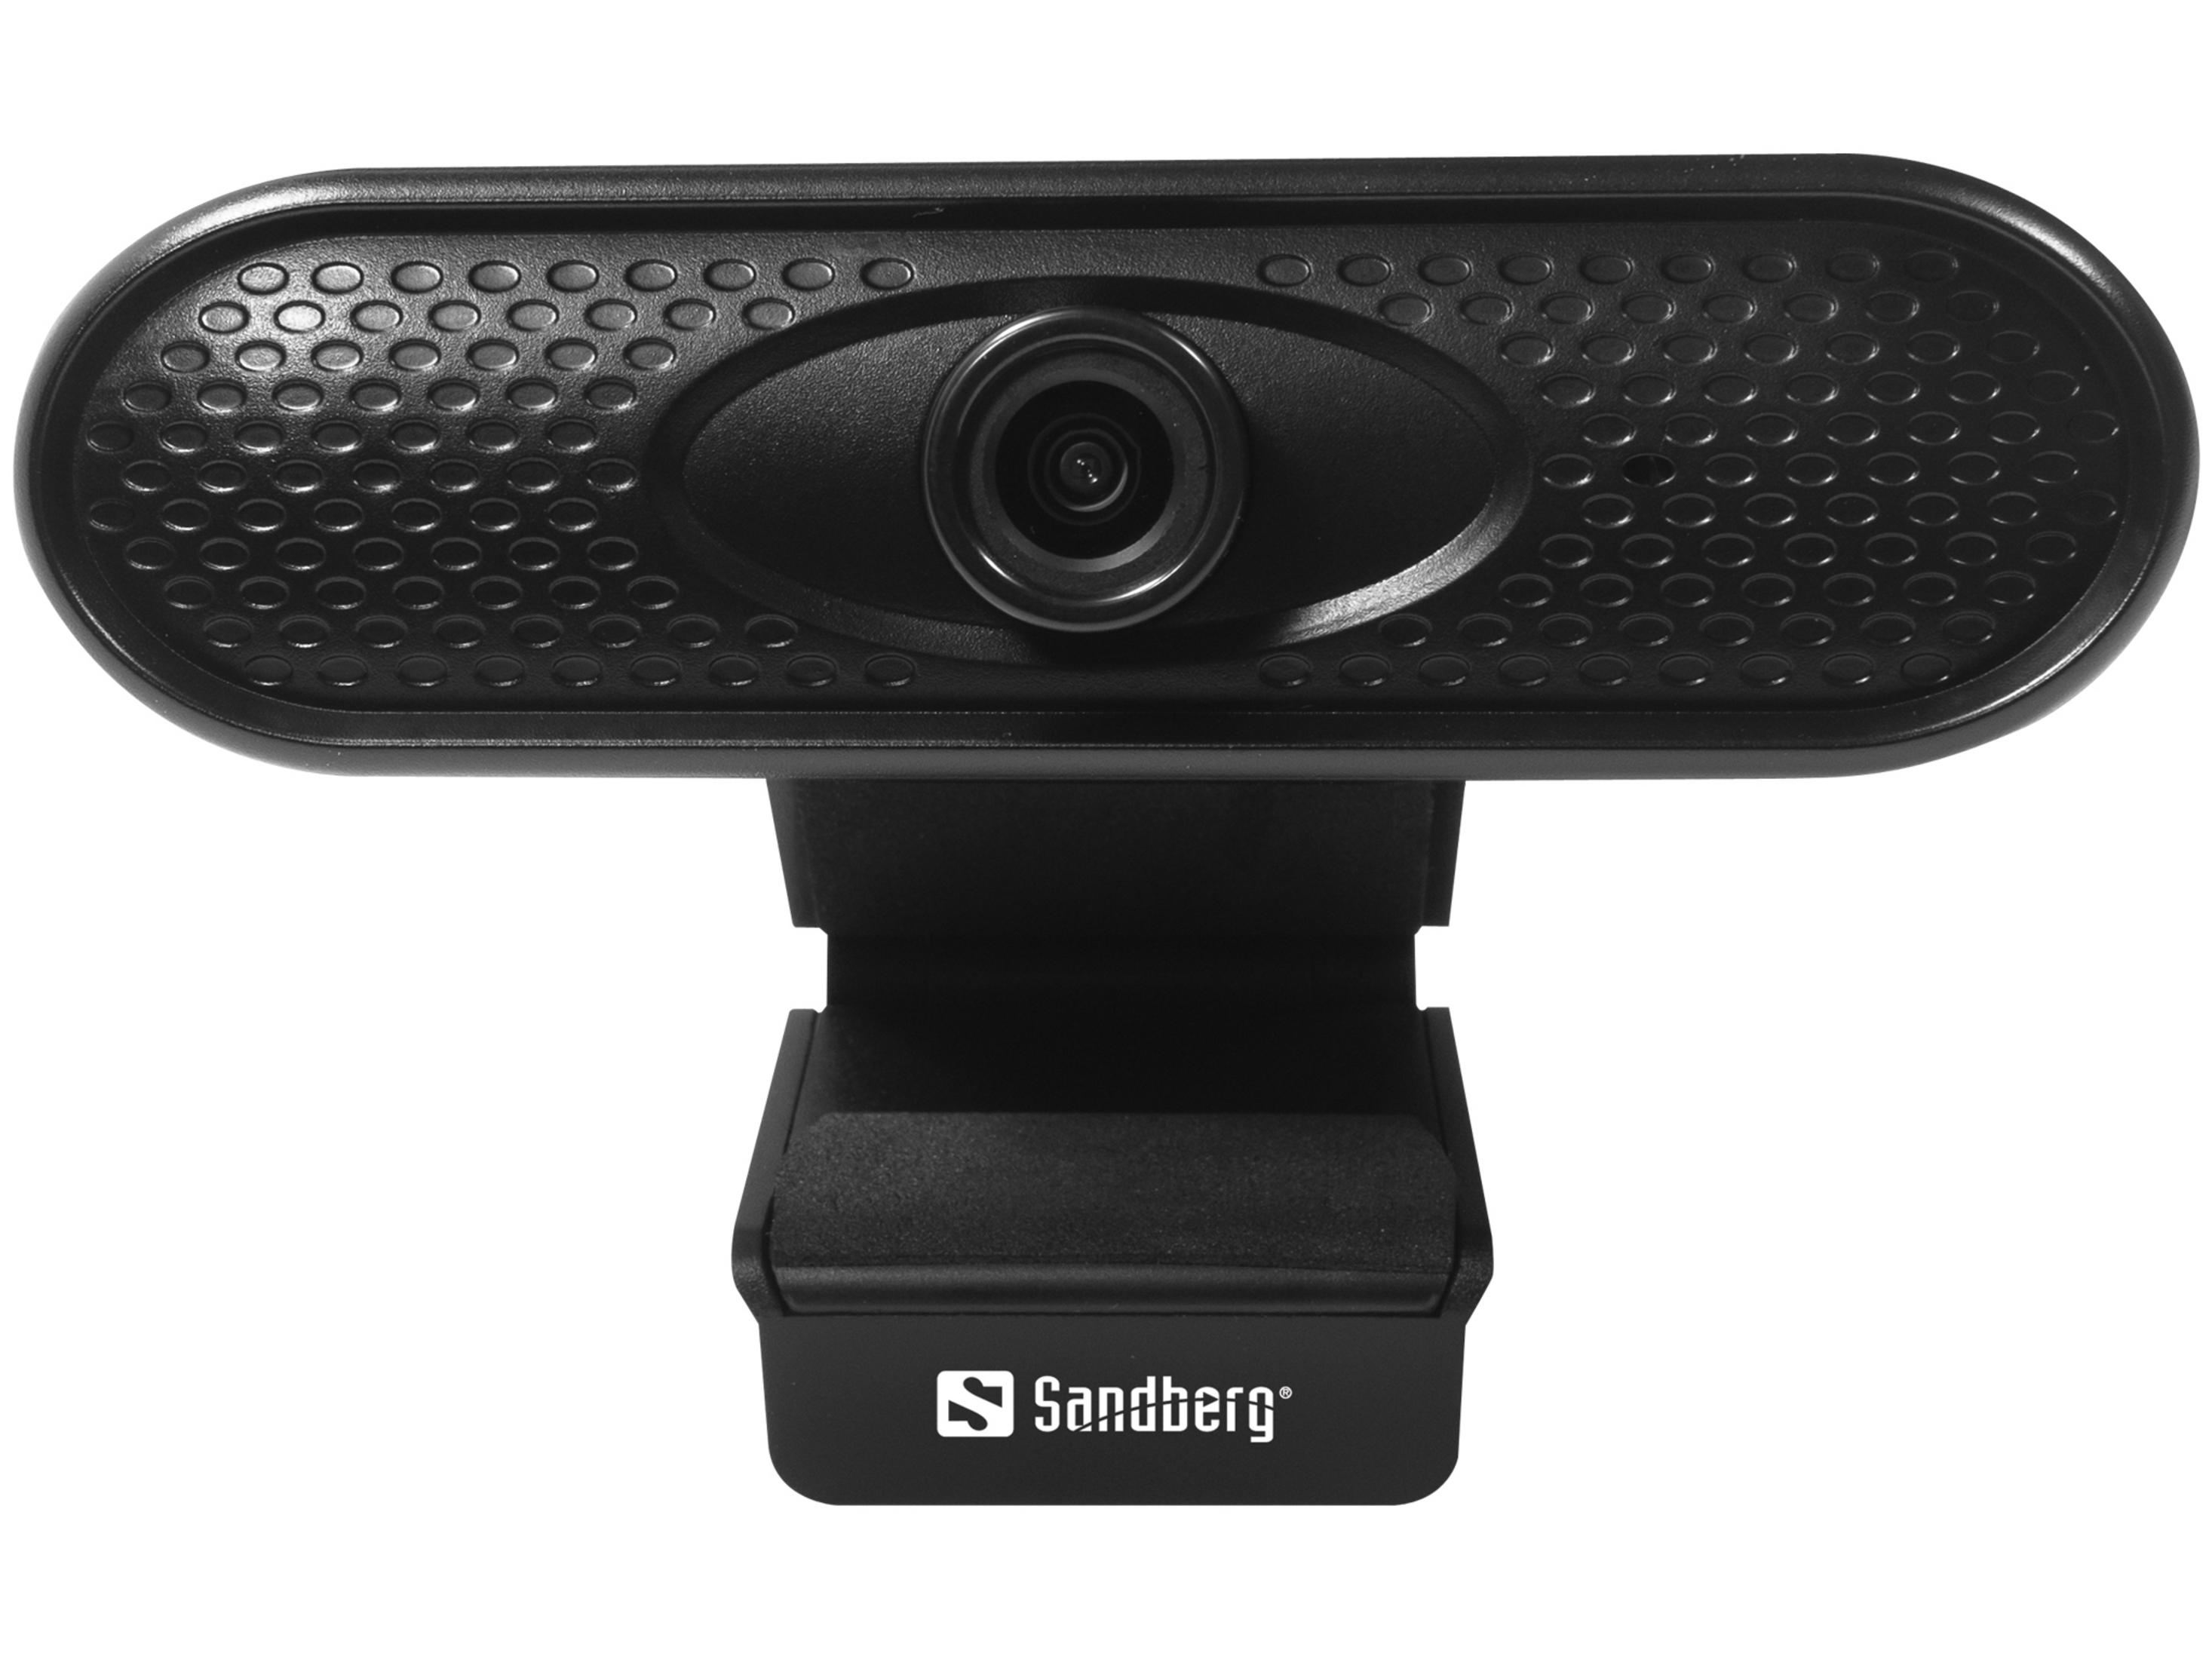 SANDBERG 133-96 USB 1080P Web WEBCAM Cam